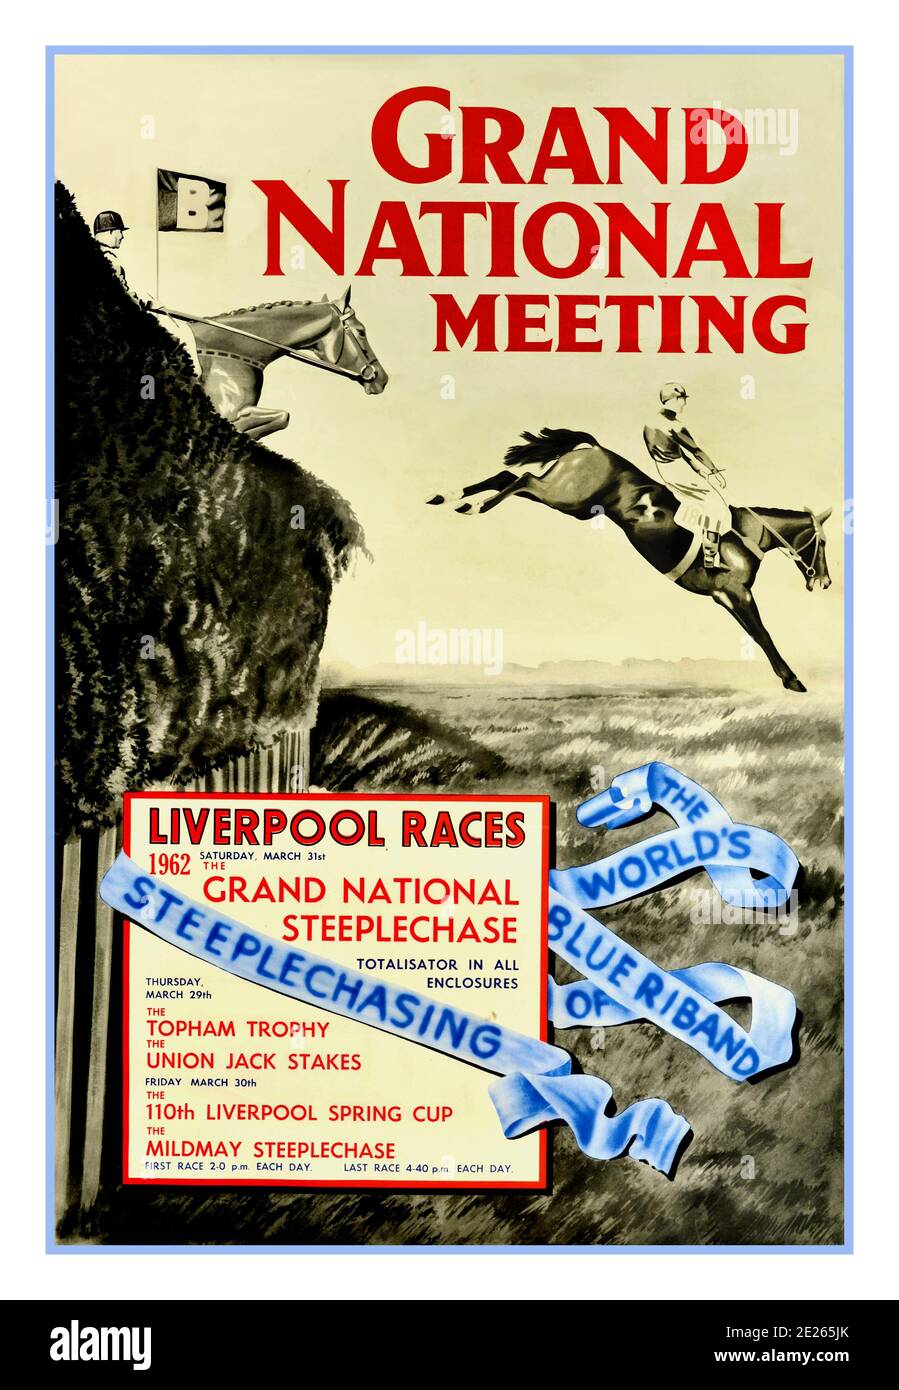 1962 Grande poster nazionale STEEPLECHASE sport d'epoca per le corse di cavalli, intitolato Grand National Meeting - The World's Blue Riband of Steeplechasing, corse di Liverpool, disegno di carbone di due cavalli e scacchielli in azione, saltando su un ostacolo su un percorso Steeplechase. Il Grand National è una corsa di cavalli National Hunt che si tiene ogni anno all'ippodromo di Aintree, vicino a Liverpool, Inghilterra. È la corsa di salto più preziosa in Europa. L'evento si è tenuto il 31 marzo 1962, sabato. Stampato da Turner e Dunnett Limited, Liverpool. REGNO UNITO, 1962 Foto Stock